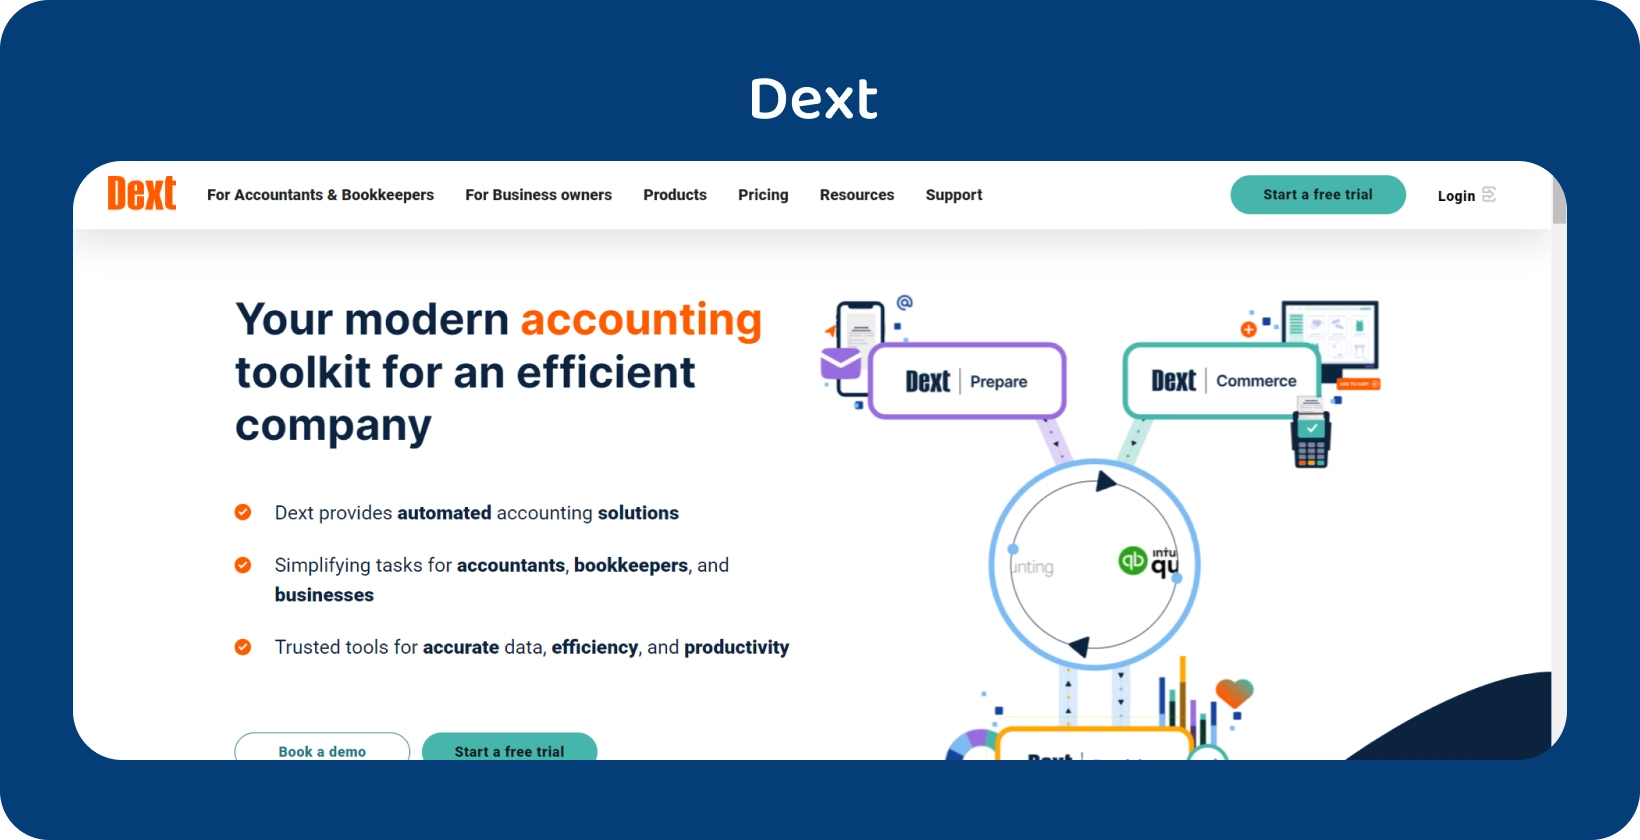 Dexts banebrydende regnskabsværktøjskassegrænseflade fremhæver automatisering for fagfolk inden for regnskab og bogføring.